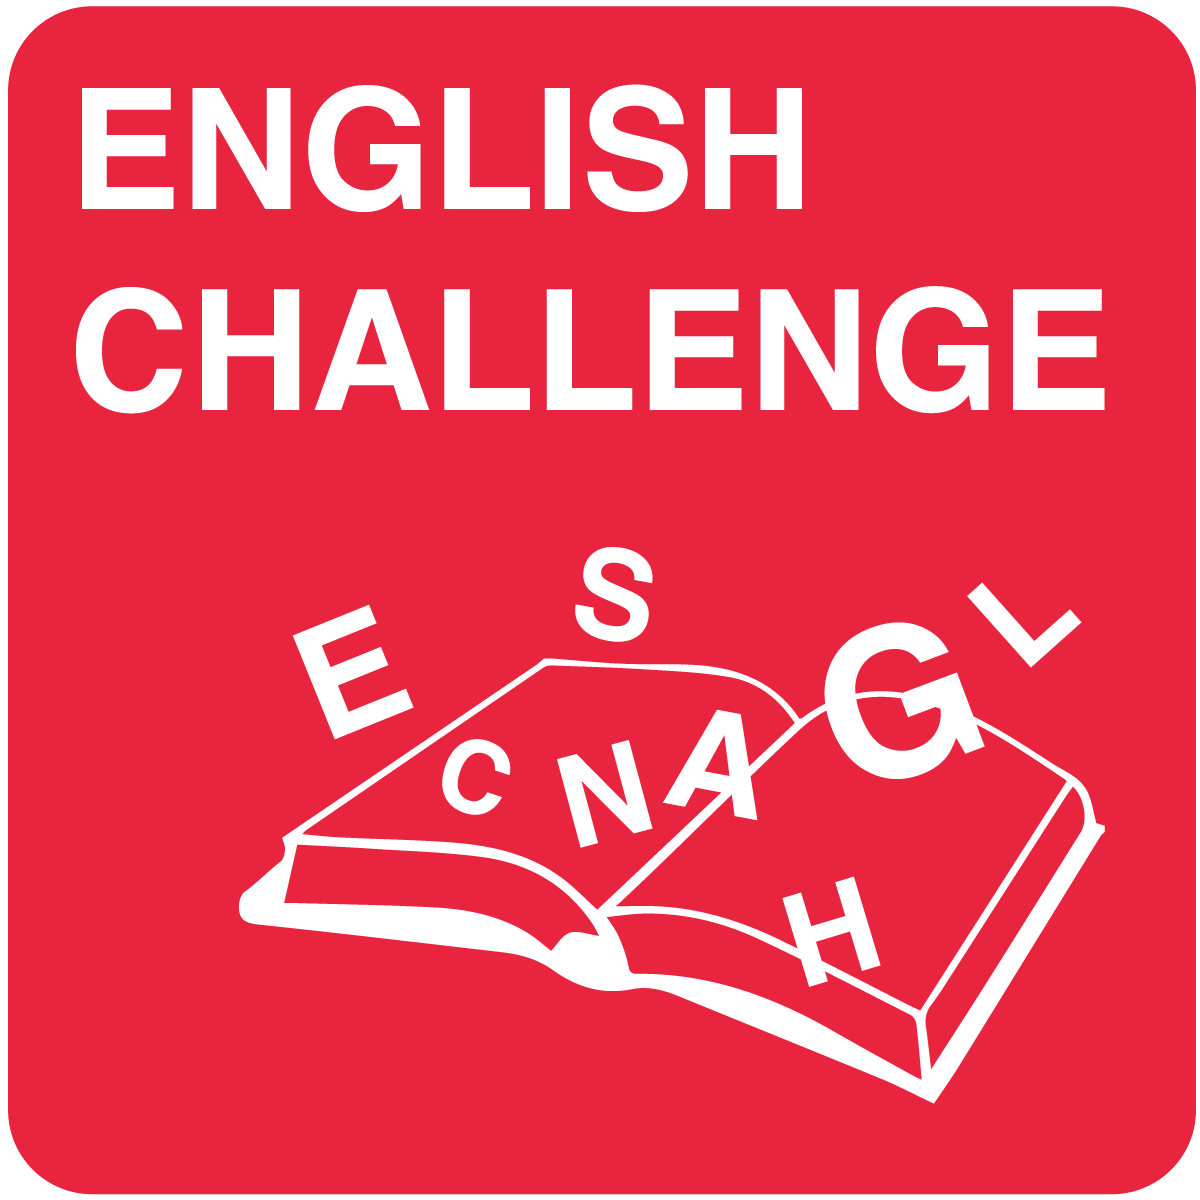 English Challenge – angļu valodas nometne (1.-6. klase)